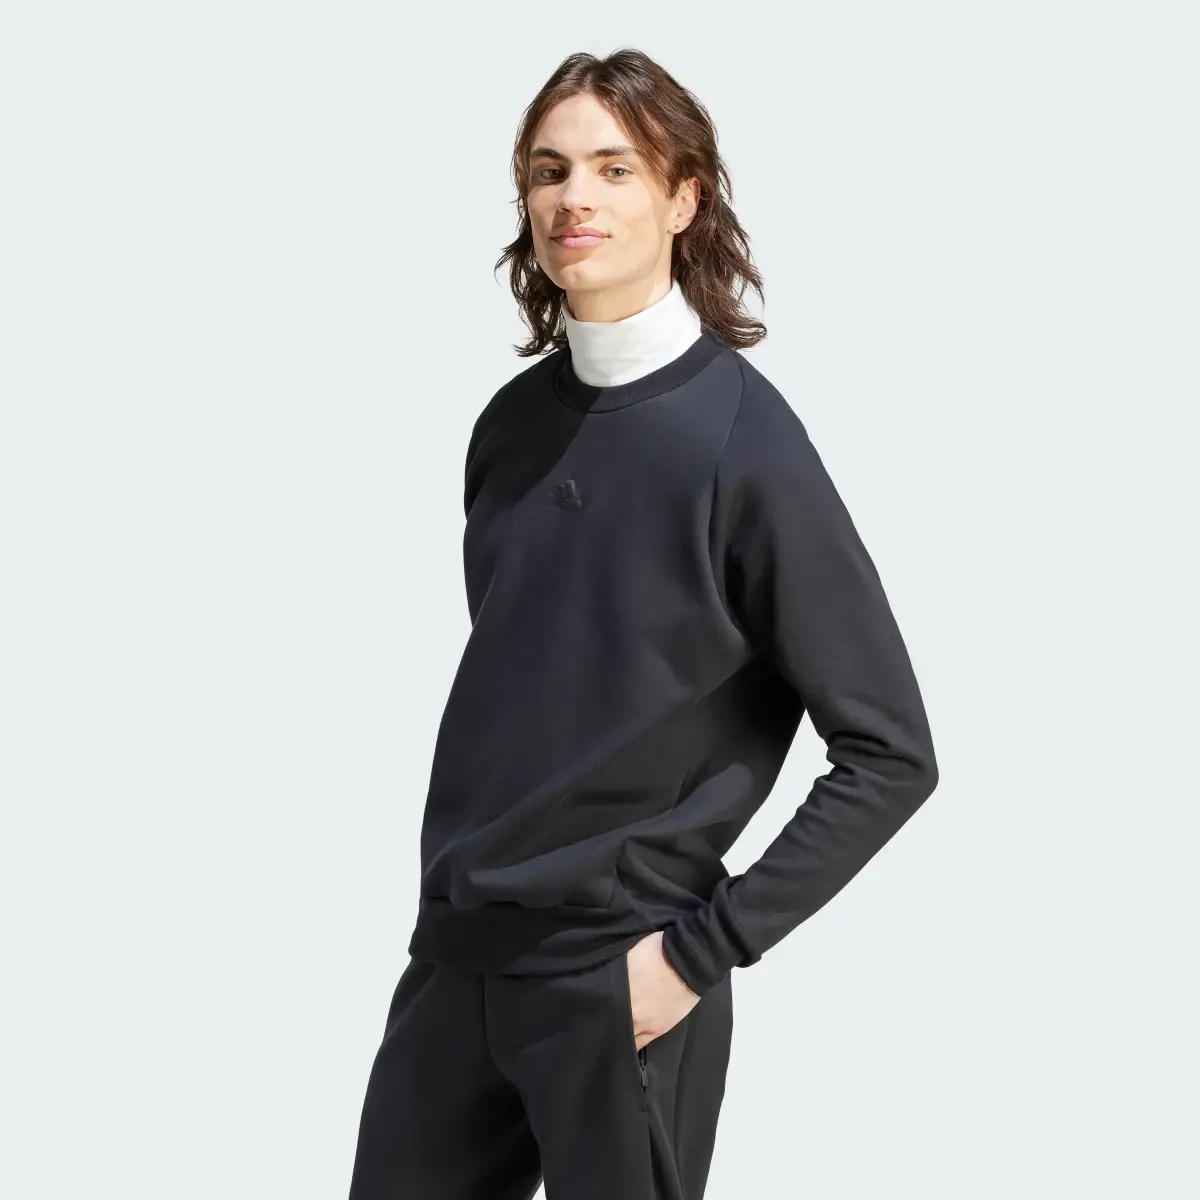 Adidas Z.N.E. Premium Sweatshirt. 3